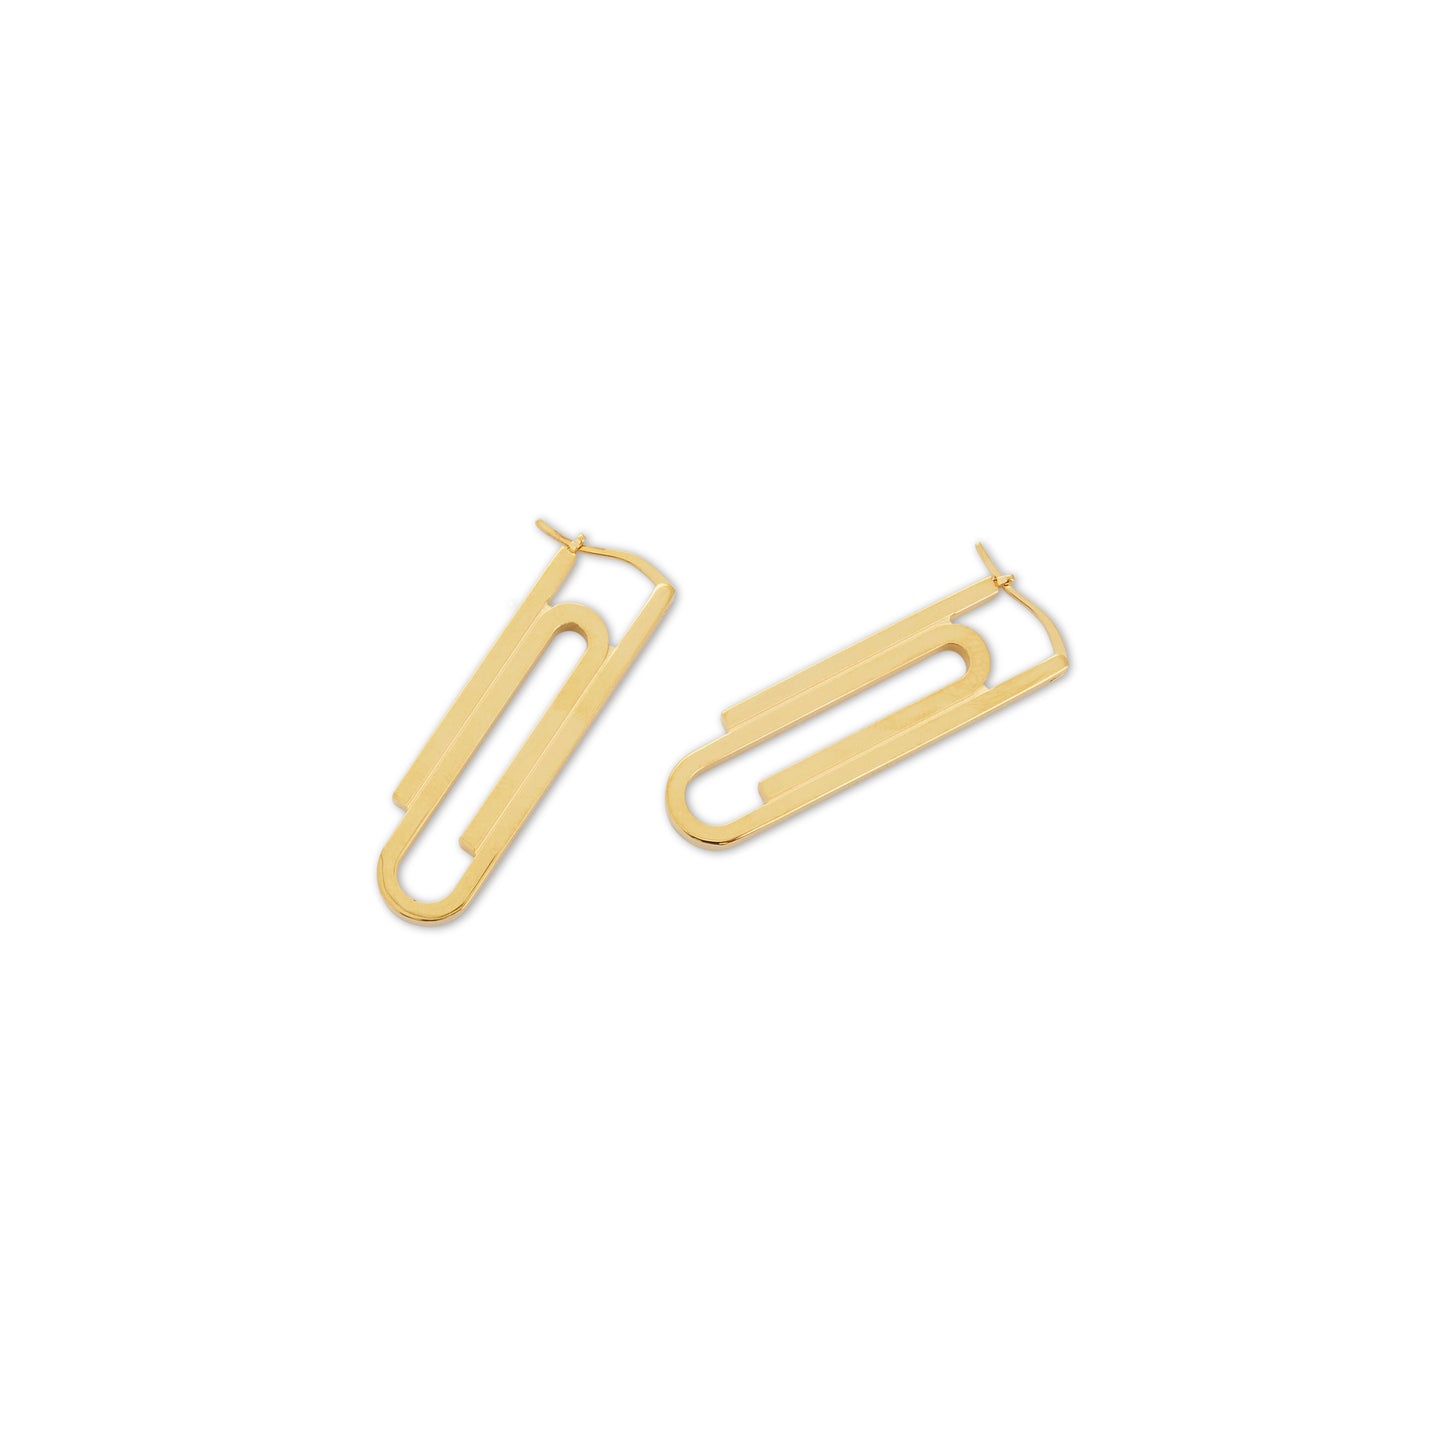 Paperclip Earrings in Gold